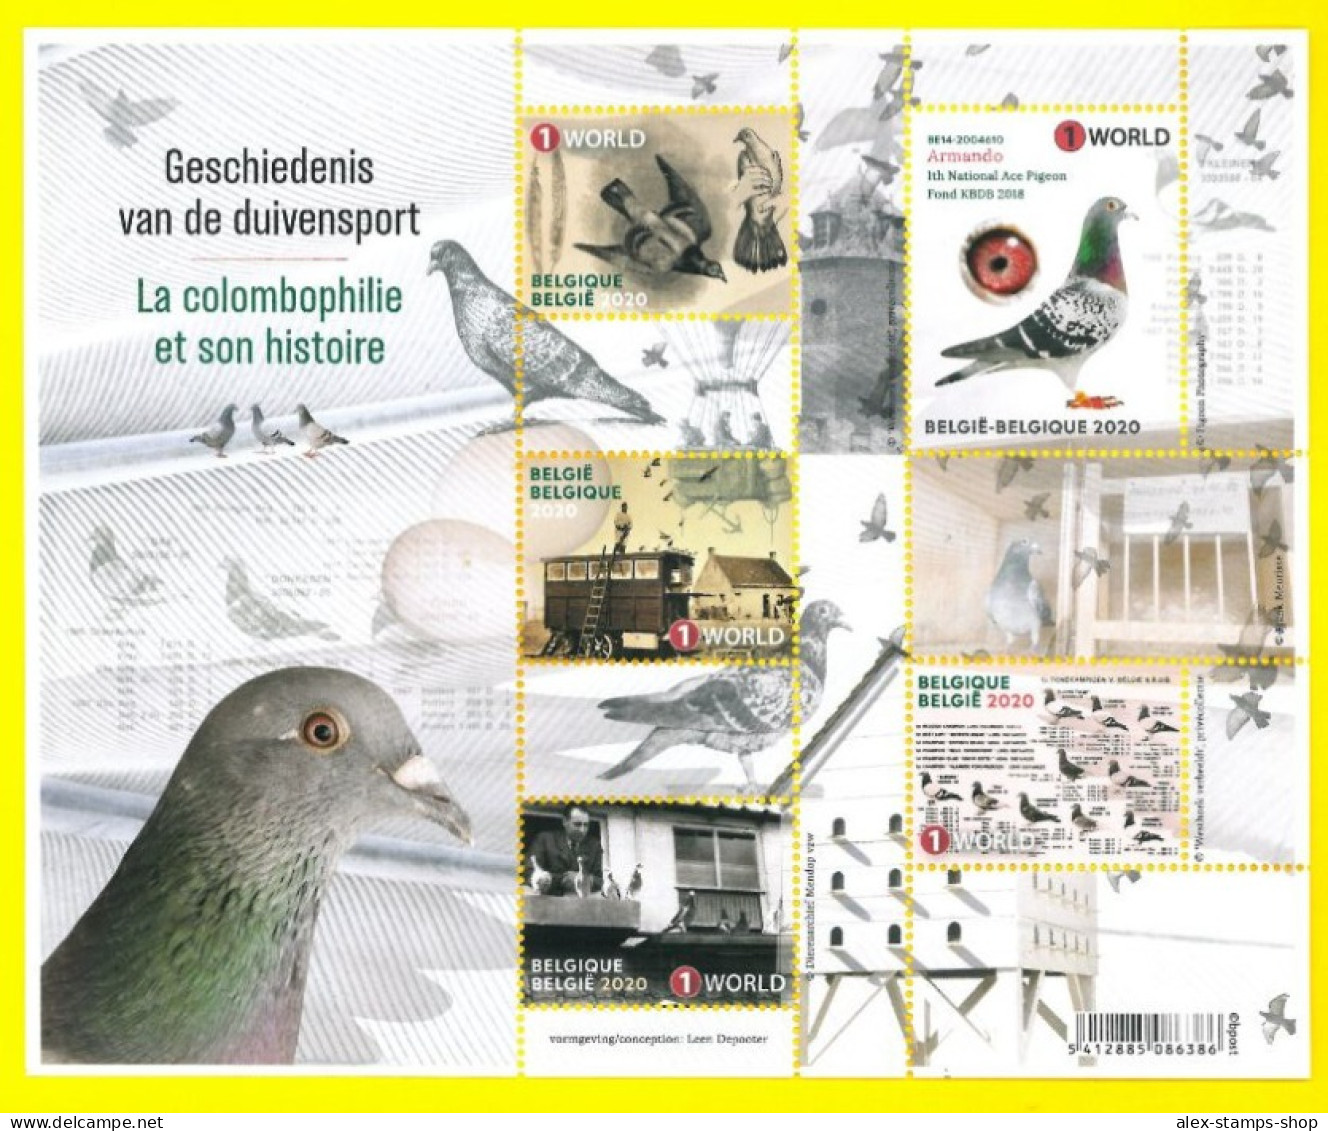 BELGIUM 2020 Winning Belgium - The History Of Pigeon Racing - New Sheet - 2011-2020